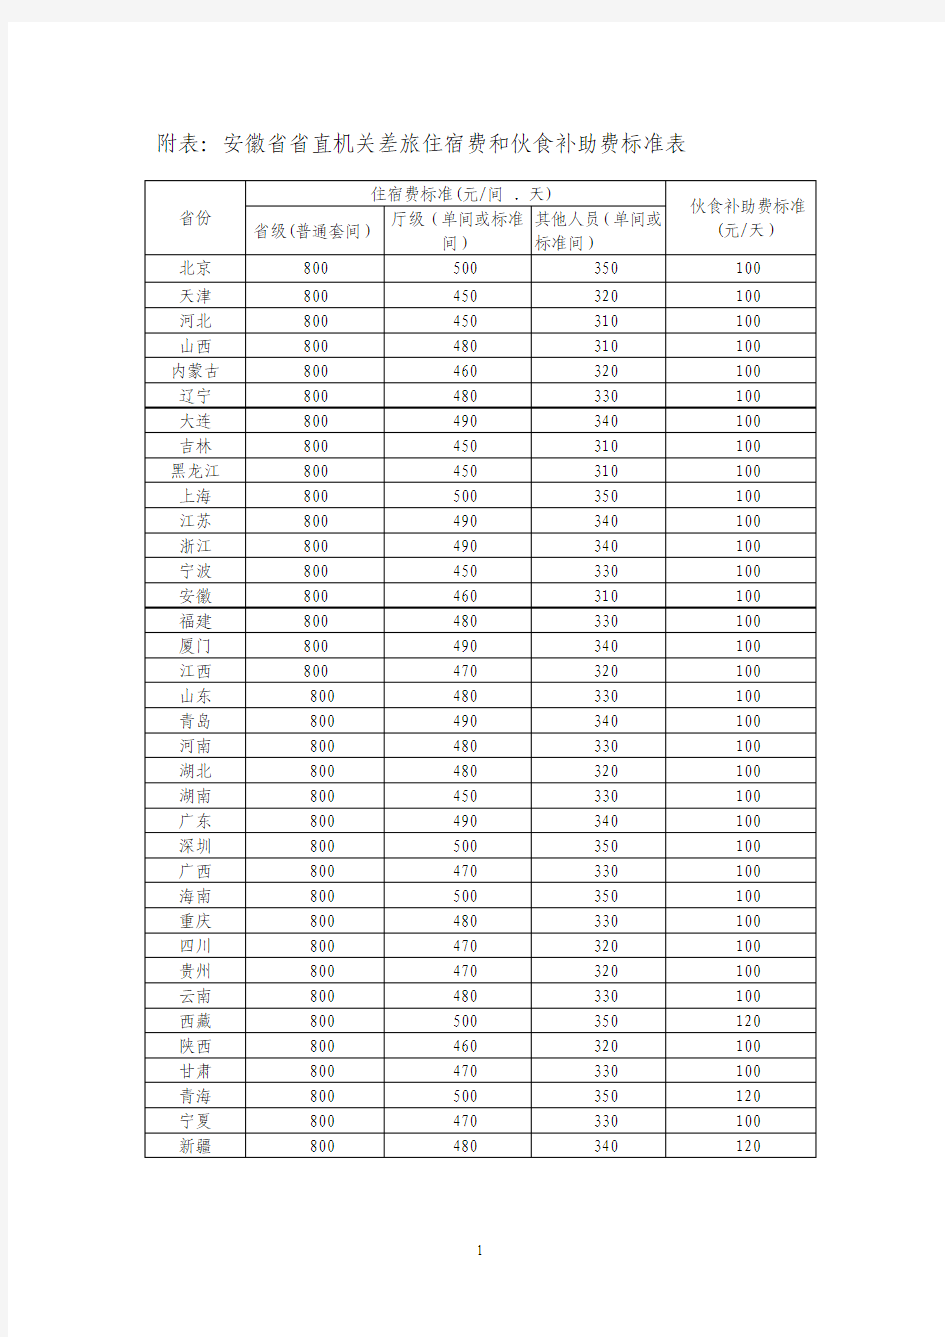 附表：安徽省省直机关差旅住宿费和伙食补助费标准表